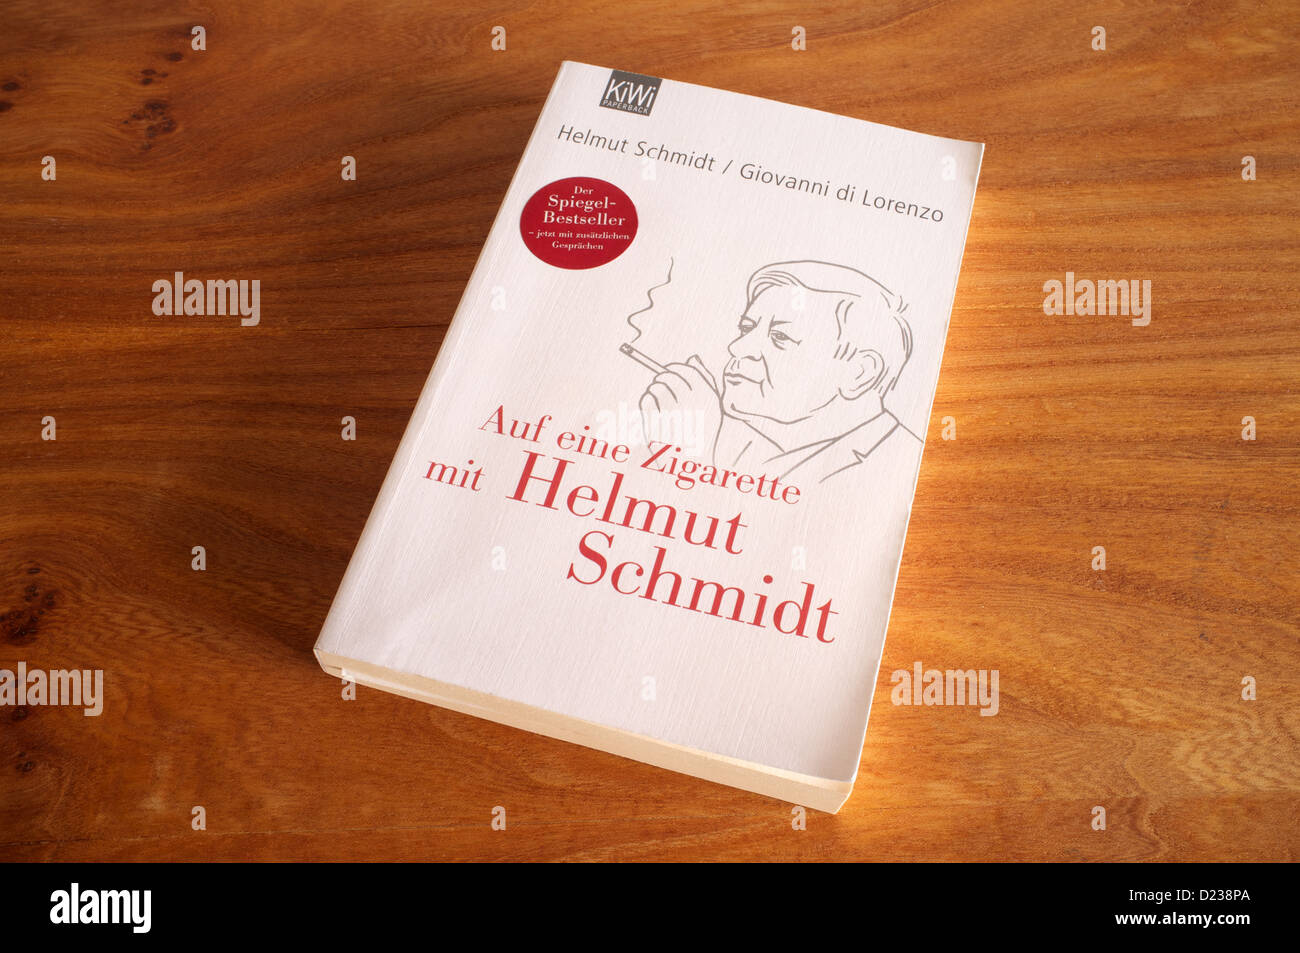 Helmut Schmidt libro in brossura Foto Stock